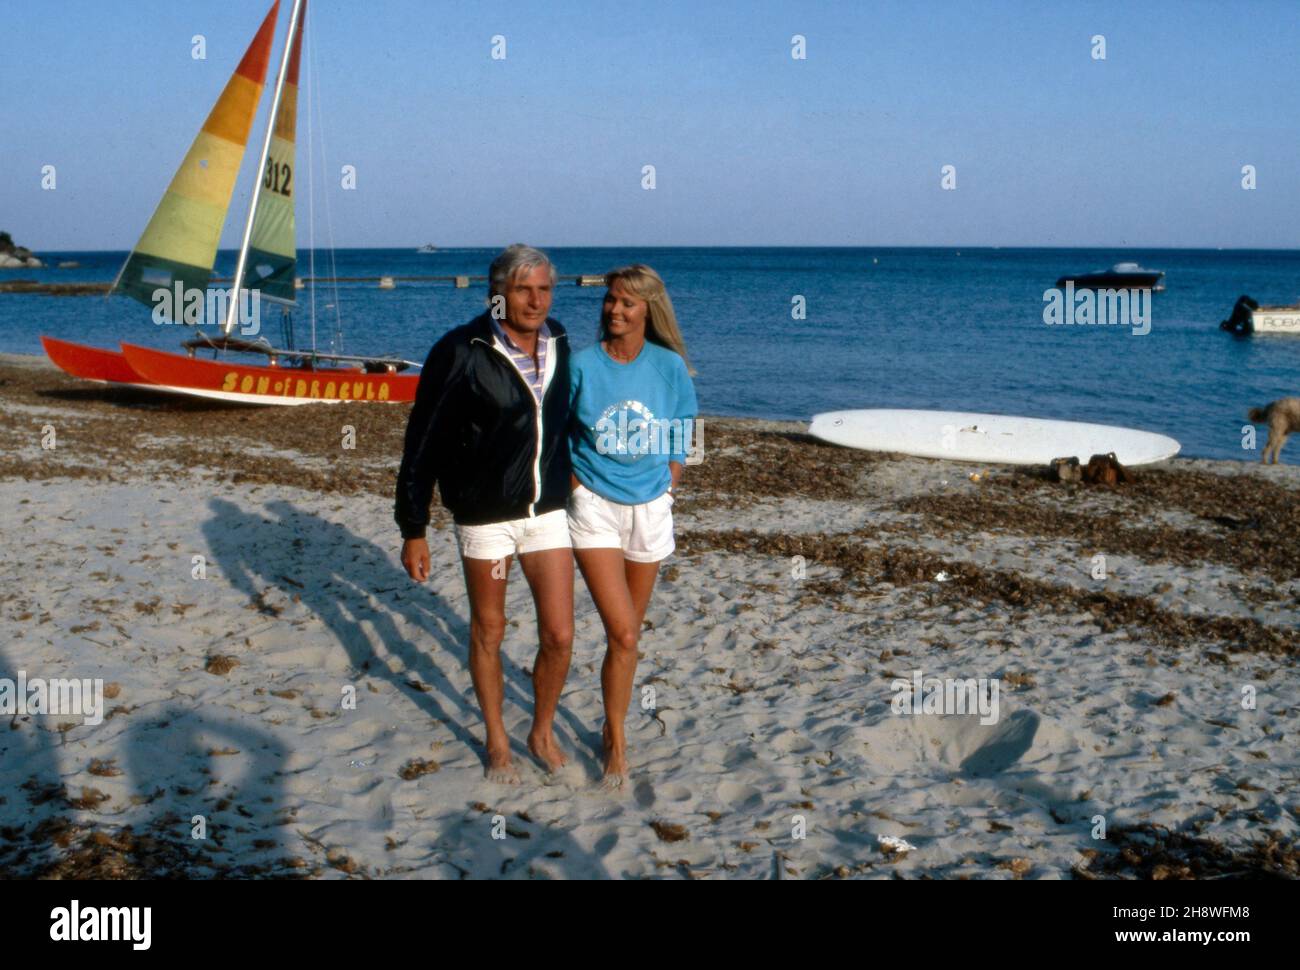 Gunter Sachs und Ehefrau Mirja am Strand von St. Tropez, Frankreich um 1988. Gunter Sachs und seine Frau Mirja machen einen Spaziergang am Strand von St. Tropez, Frankreich 1988. Stockfoto